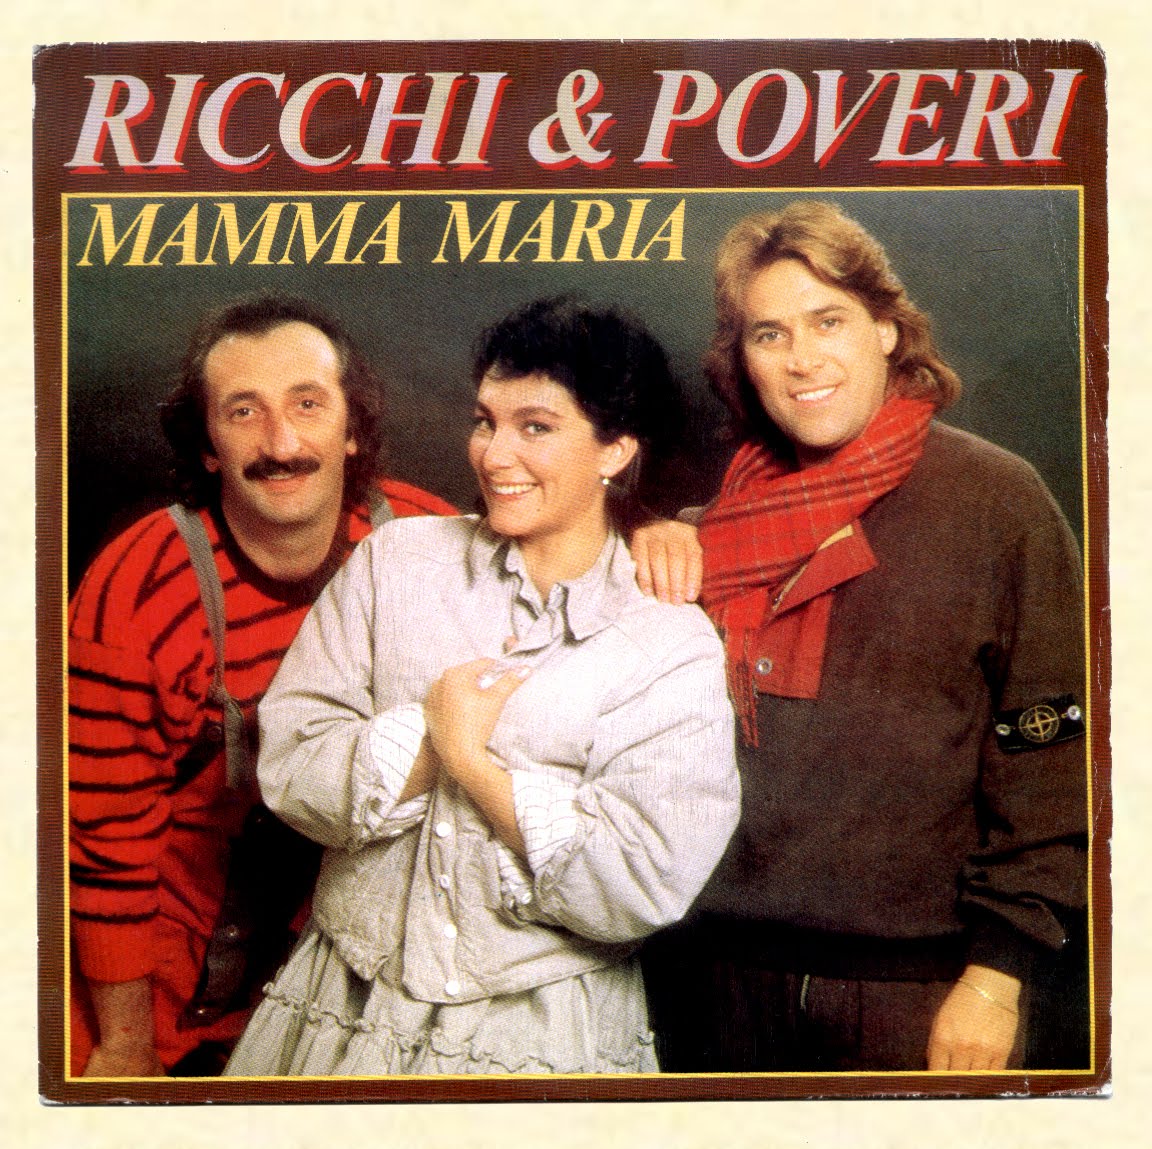 Песня поют итальянцы. 1982 — Mamma Maria. Рики е повери. Рики и повери 1981.